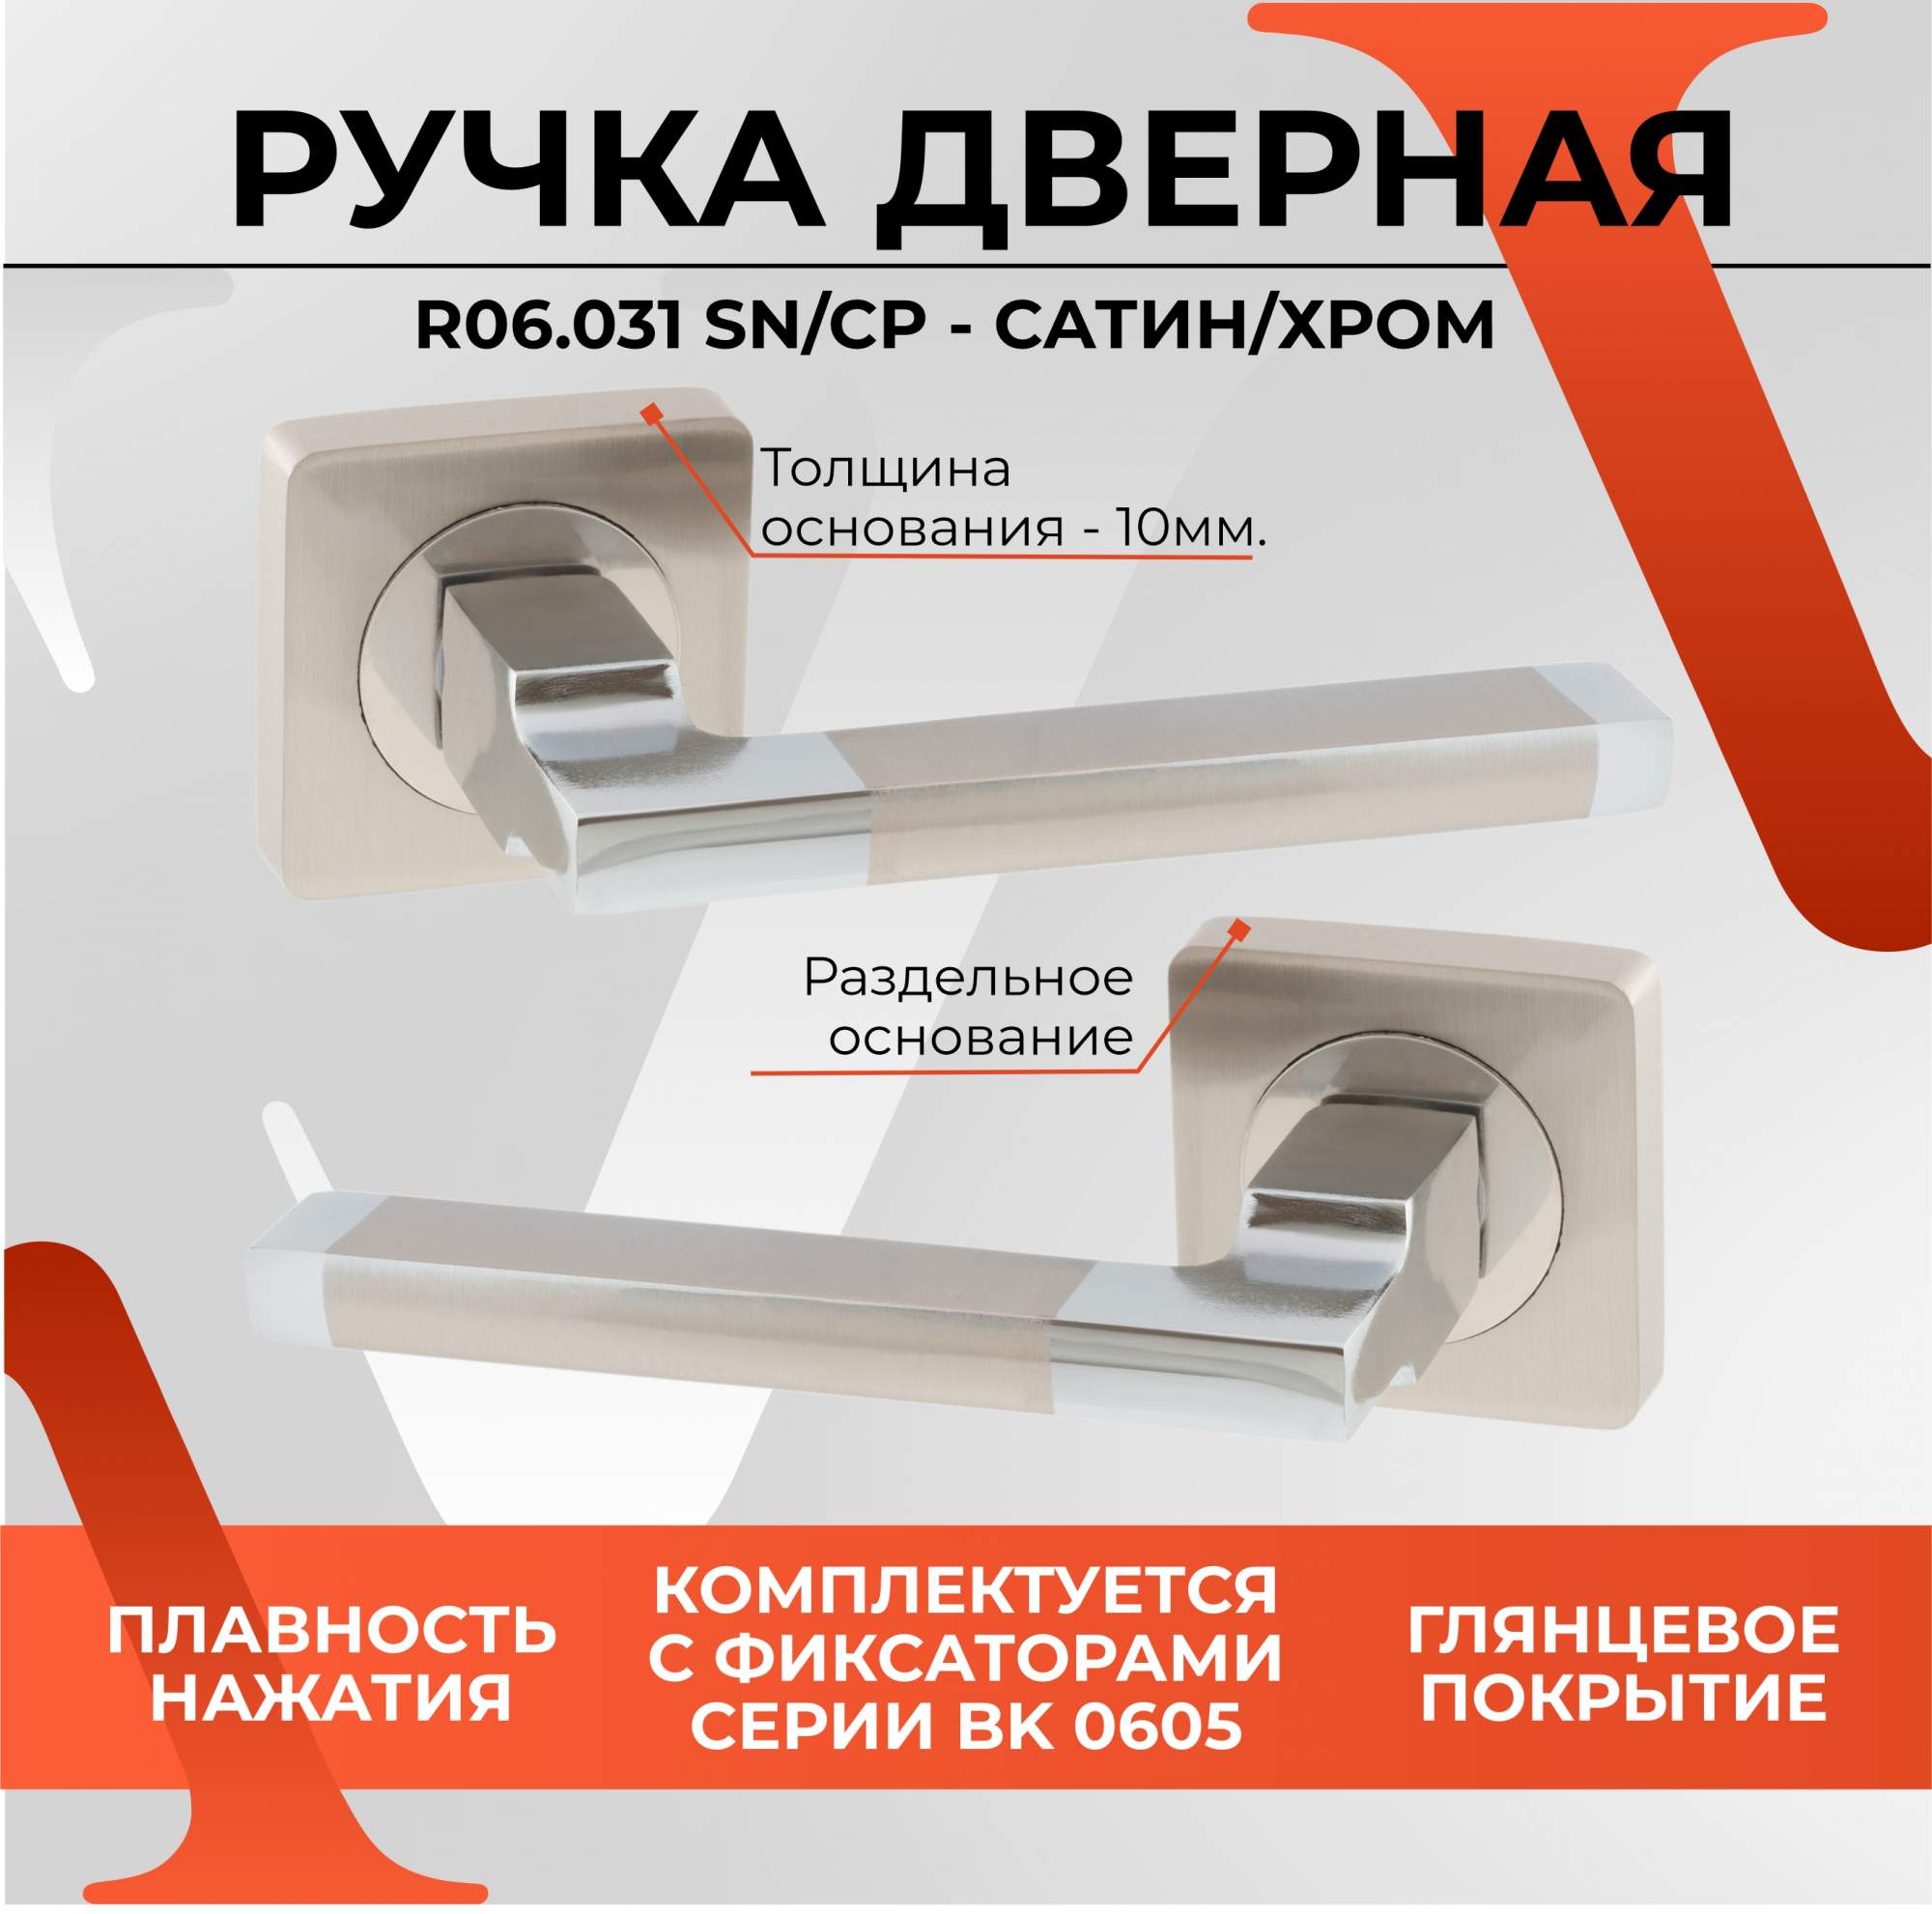 Дверная ручка для входных и межкомнатных дверей VETTORE R06.031 SN/CP (Сатин/Хром) - купить в ИП Курбатова И.Н. Москва (со склада СберМегаМаркет), цена на Мегамаркет